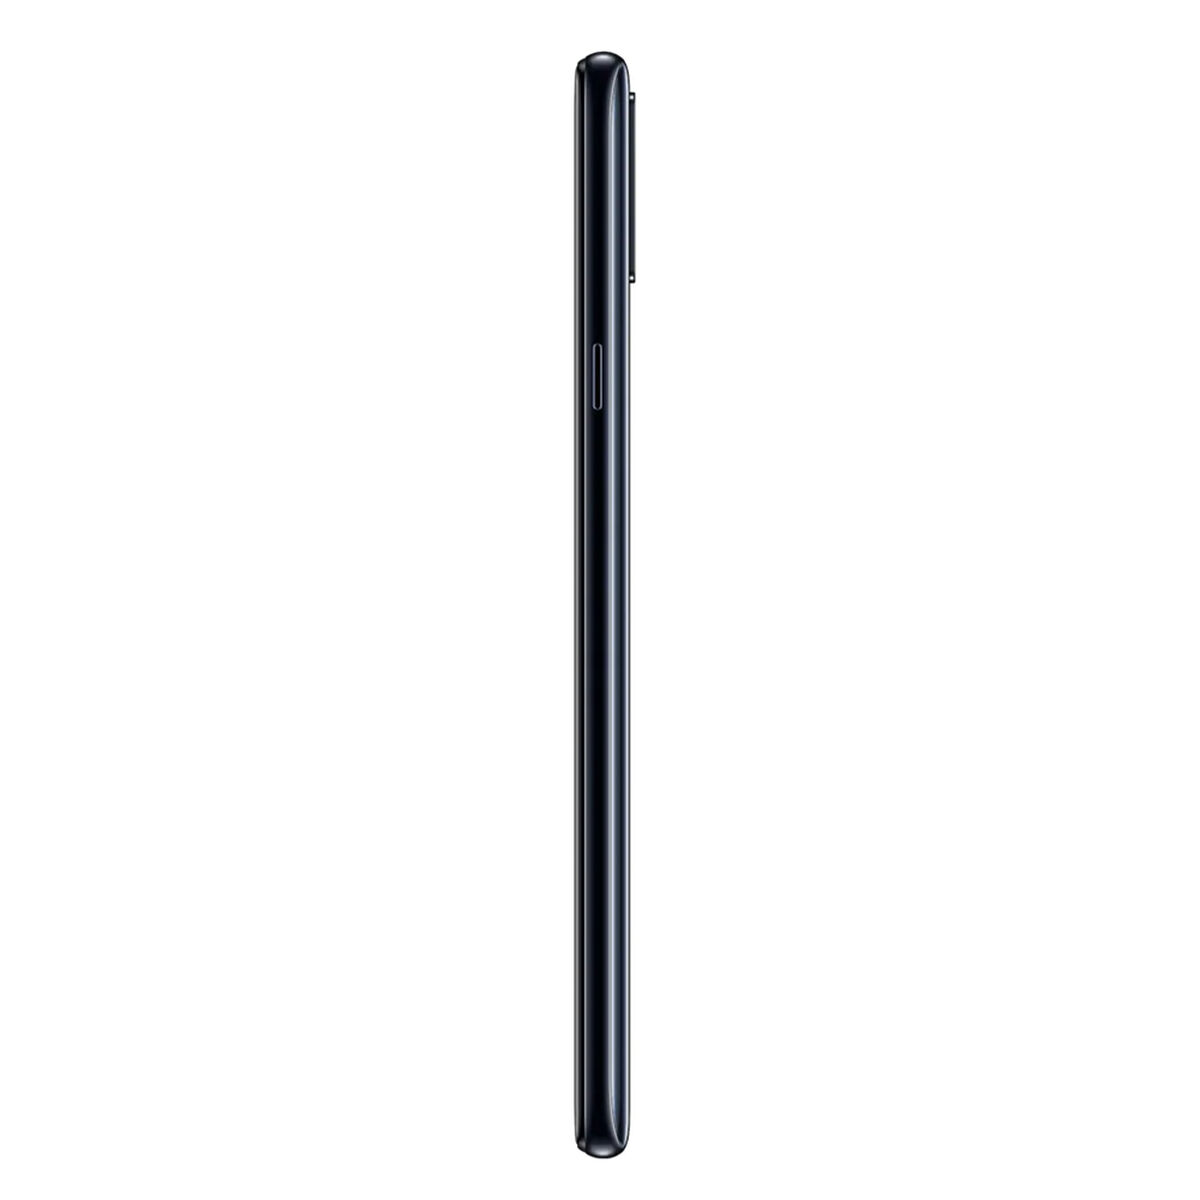 Celular Samsung Galaxy A20s 6.4" Negro Claro